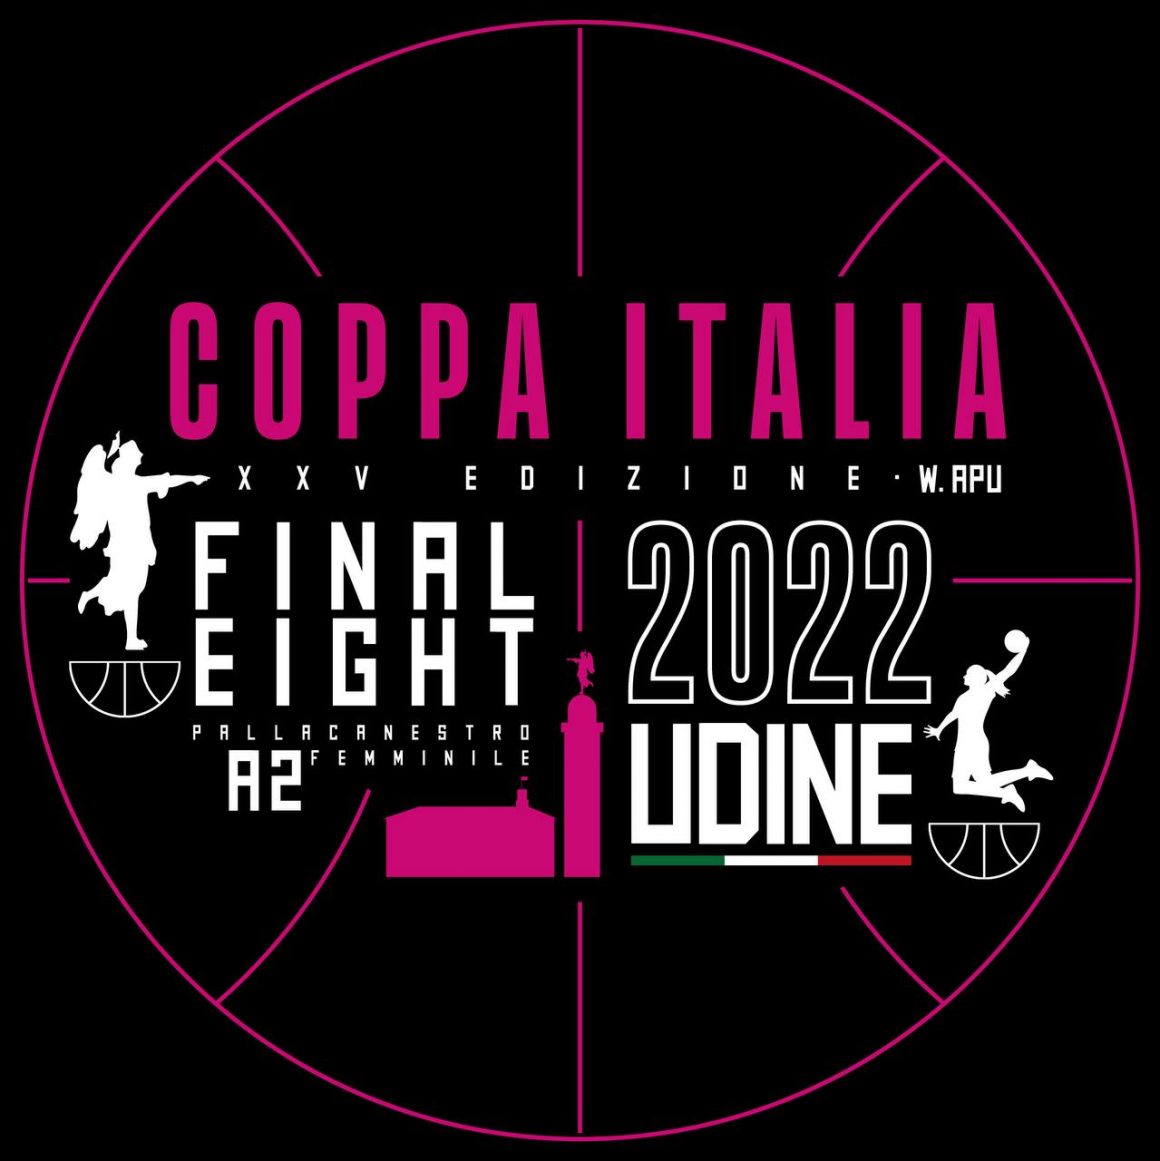 Coppa Italia a Udine: clinic a cura di Giovanni Lucchesi e di Mario Zaninelli, un evento da non perdere